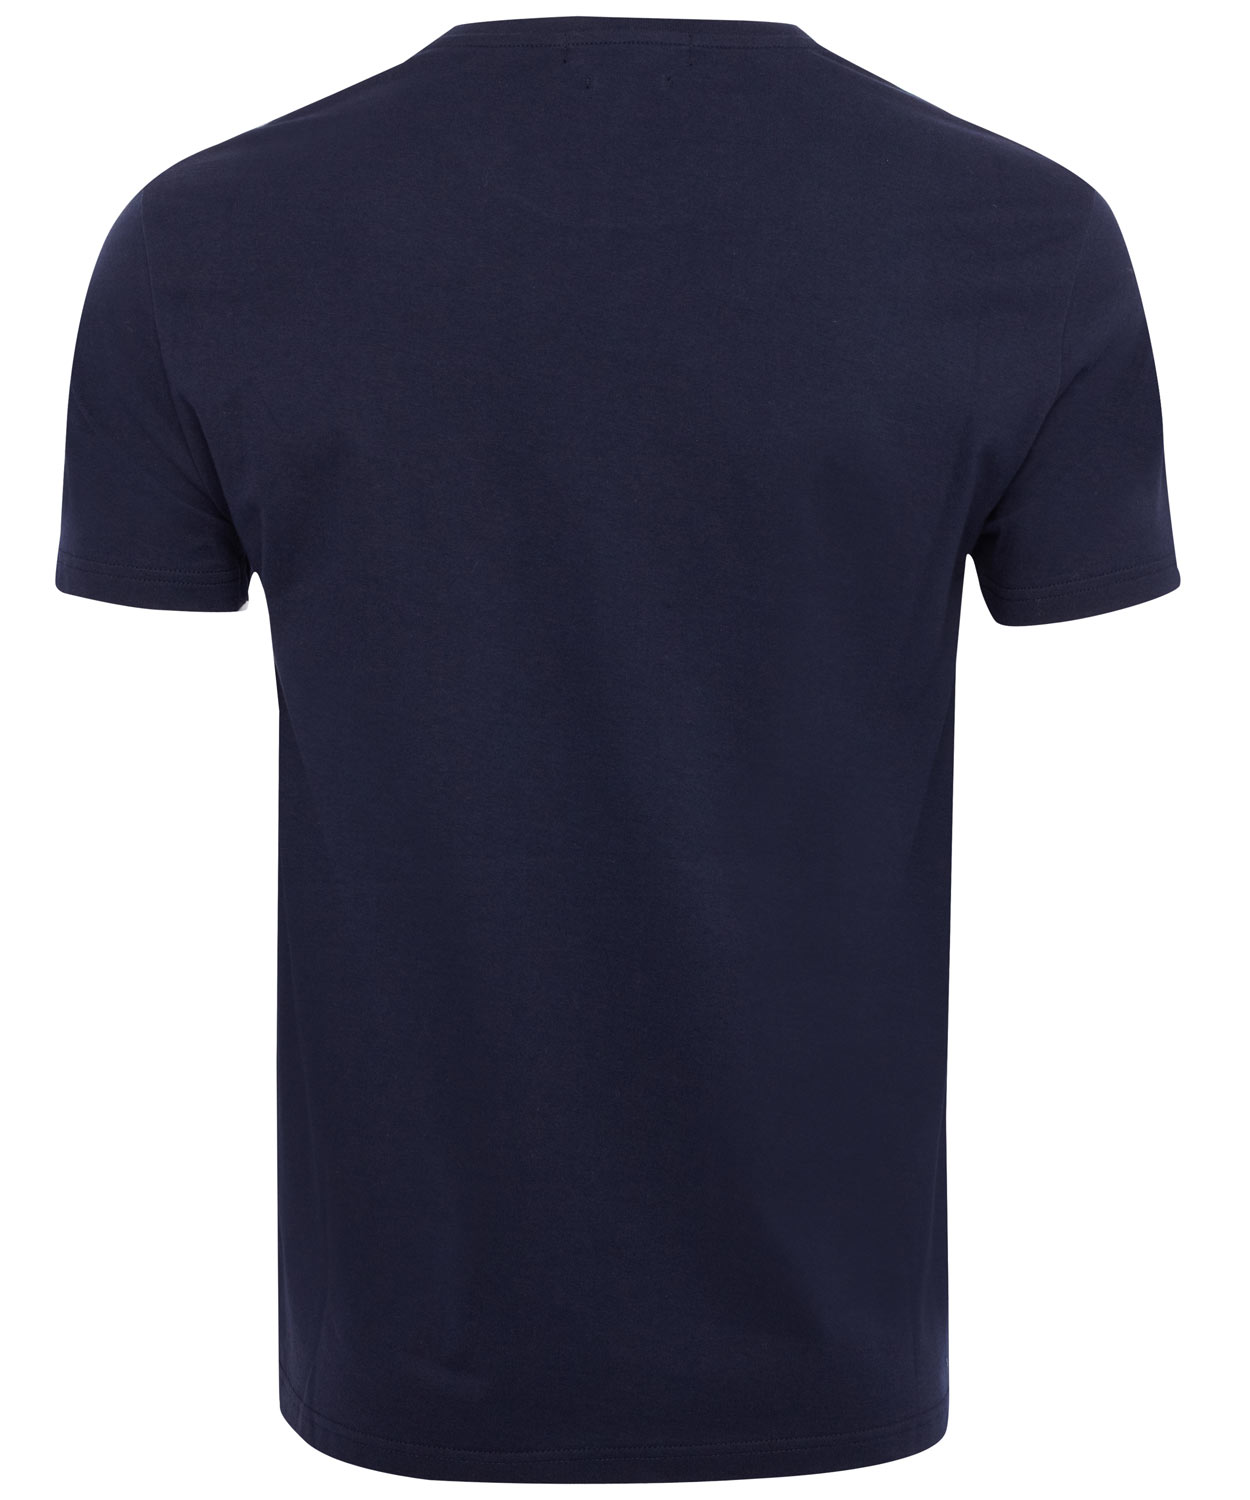 Alexander McQueen Navy Ivy Skull Print Tshirt in Blue for Men - Lyst